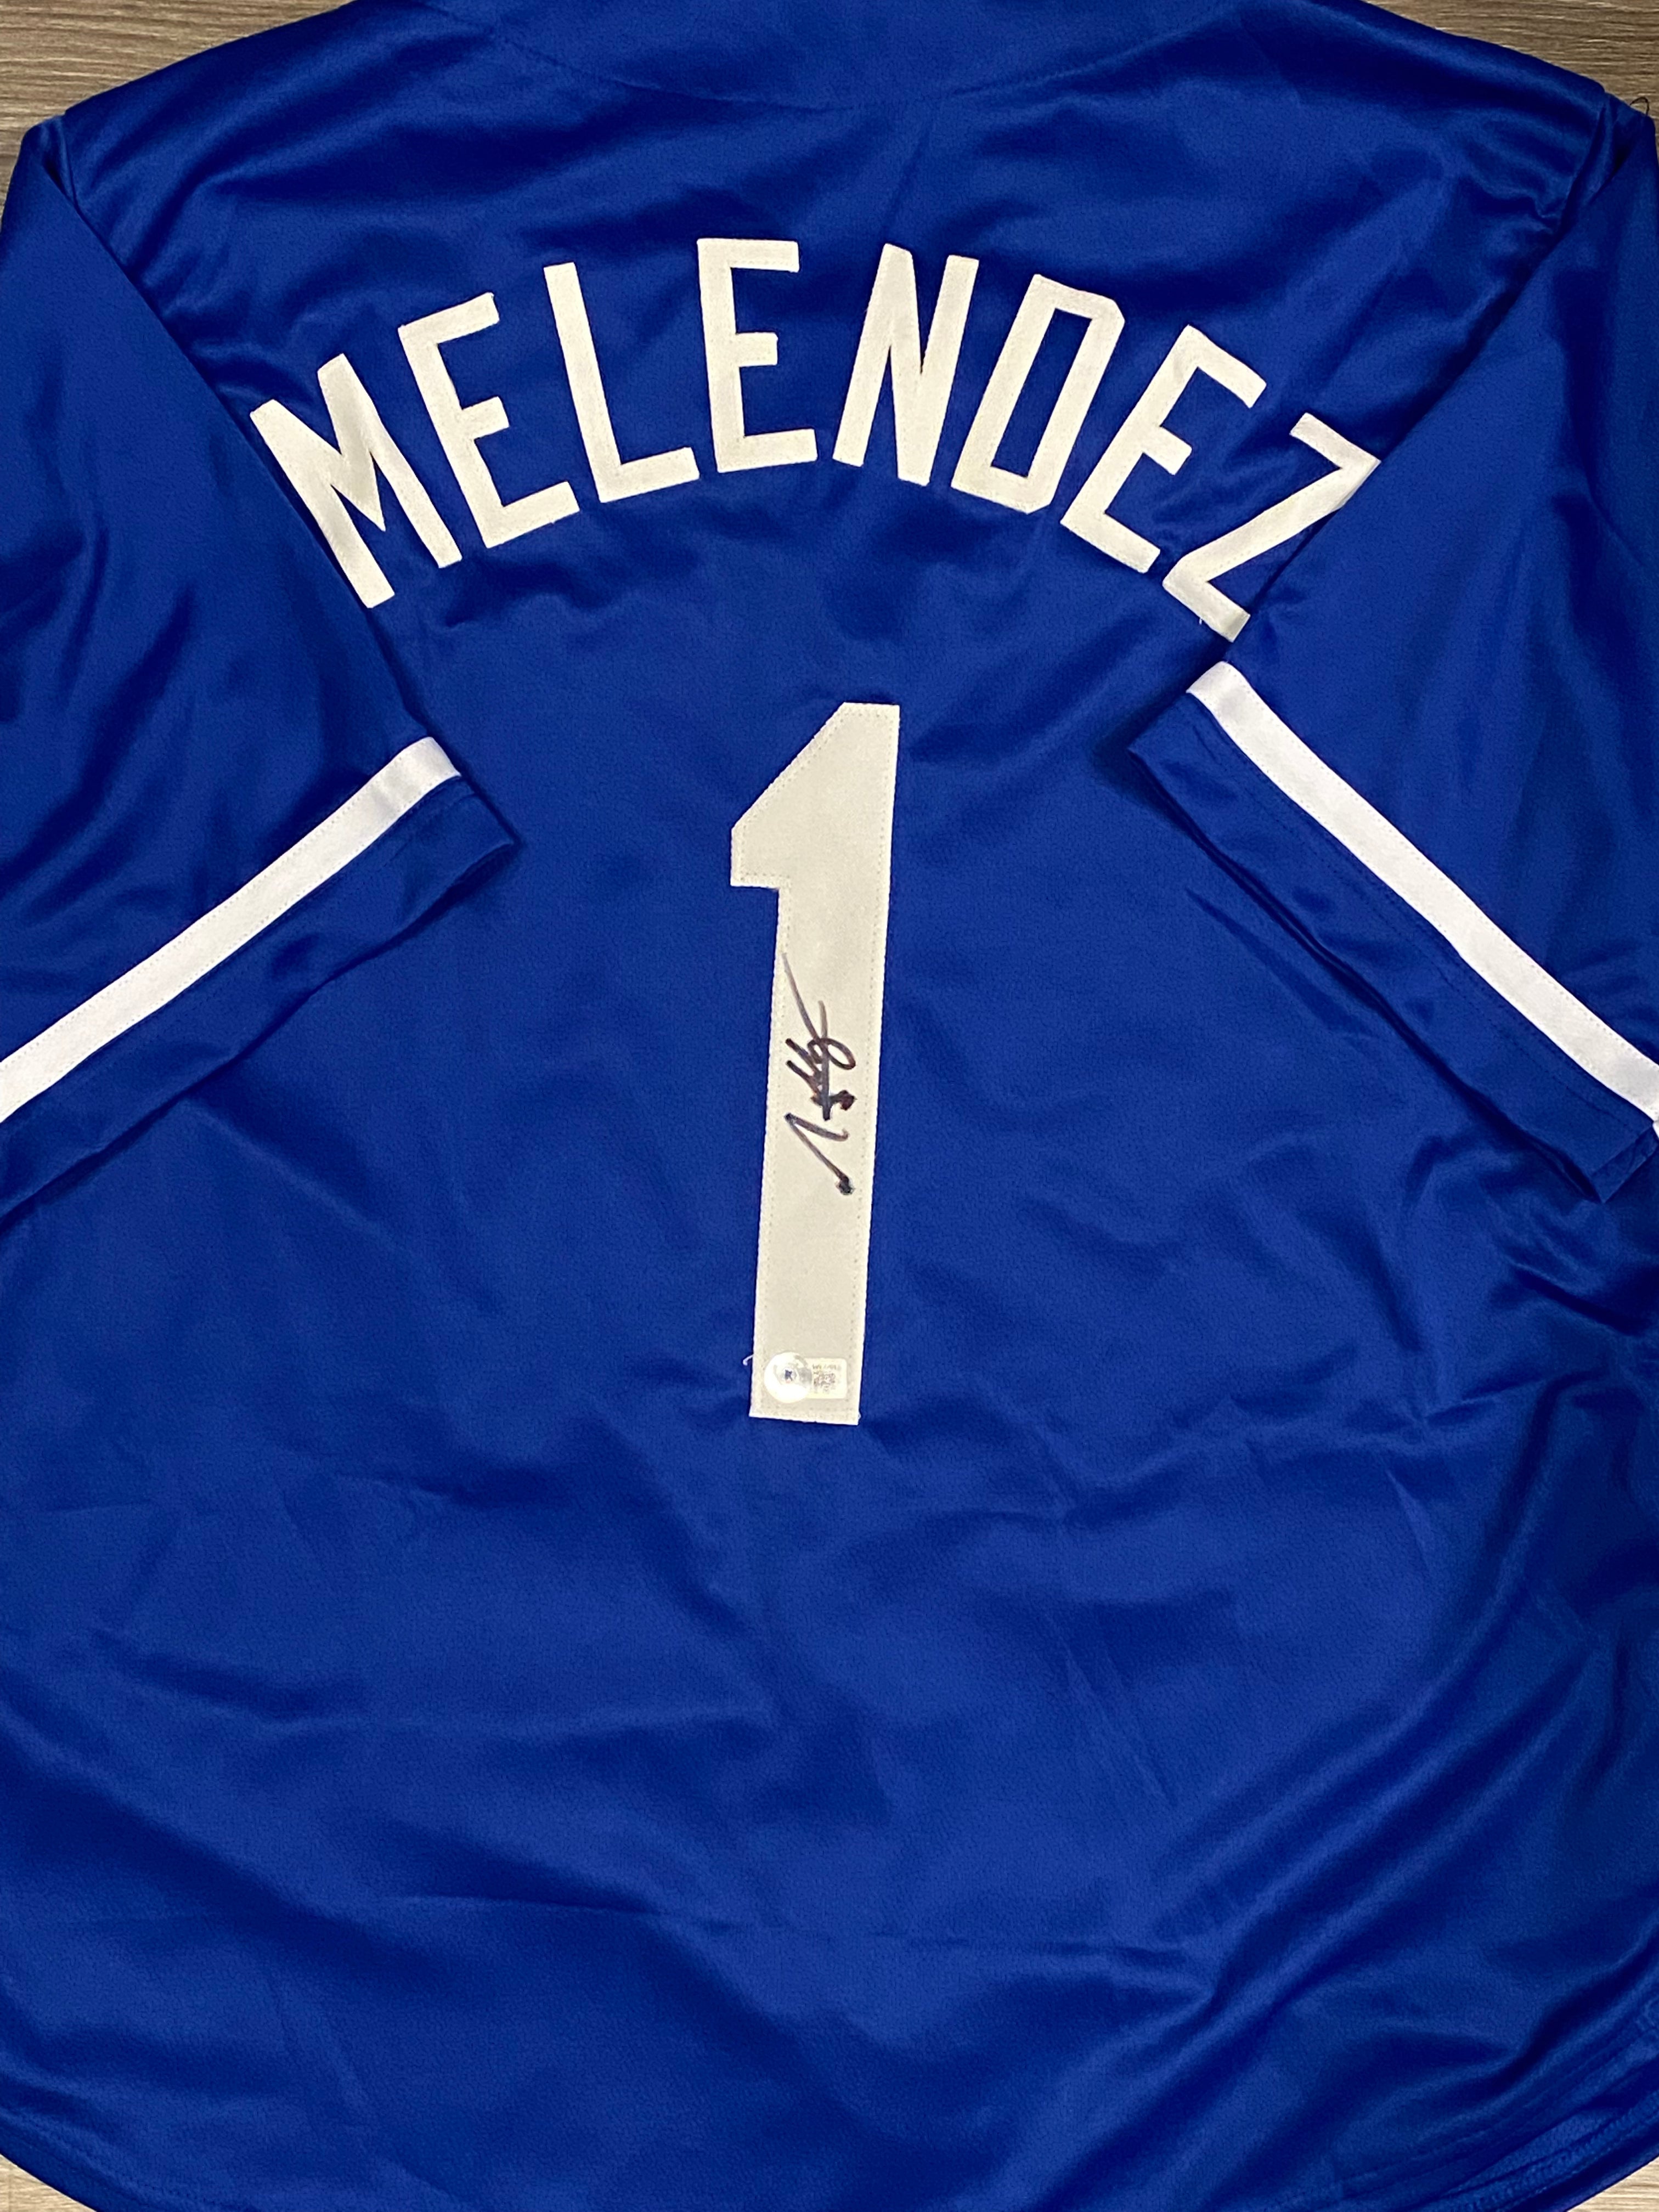 Kansas City Royals MJ Melendez Autographed BLUE Custom Jersey - BECKET